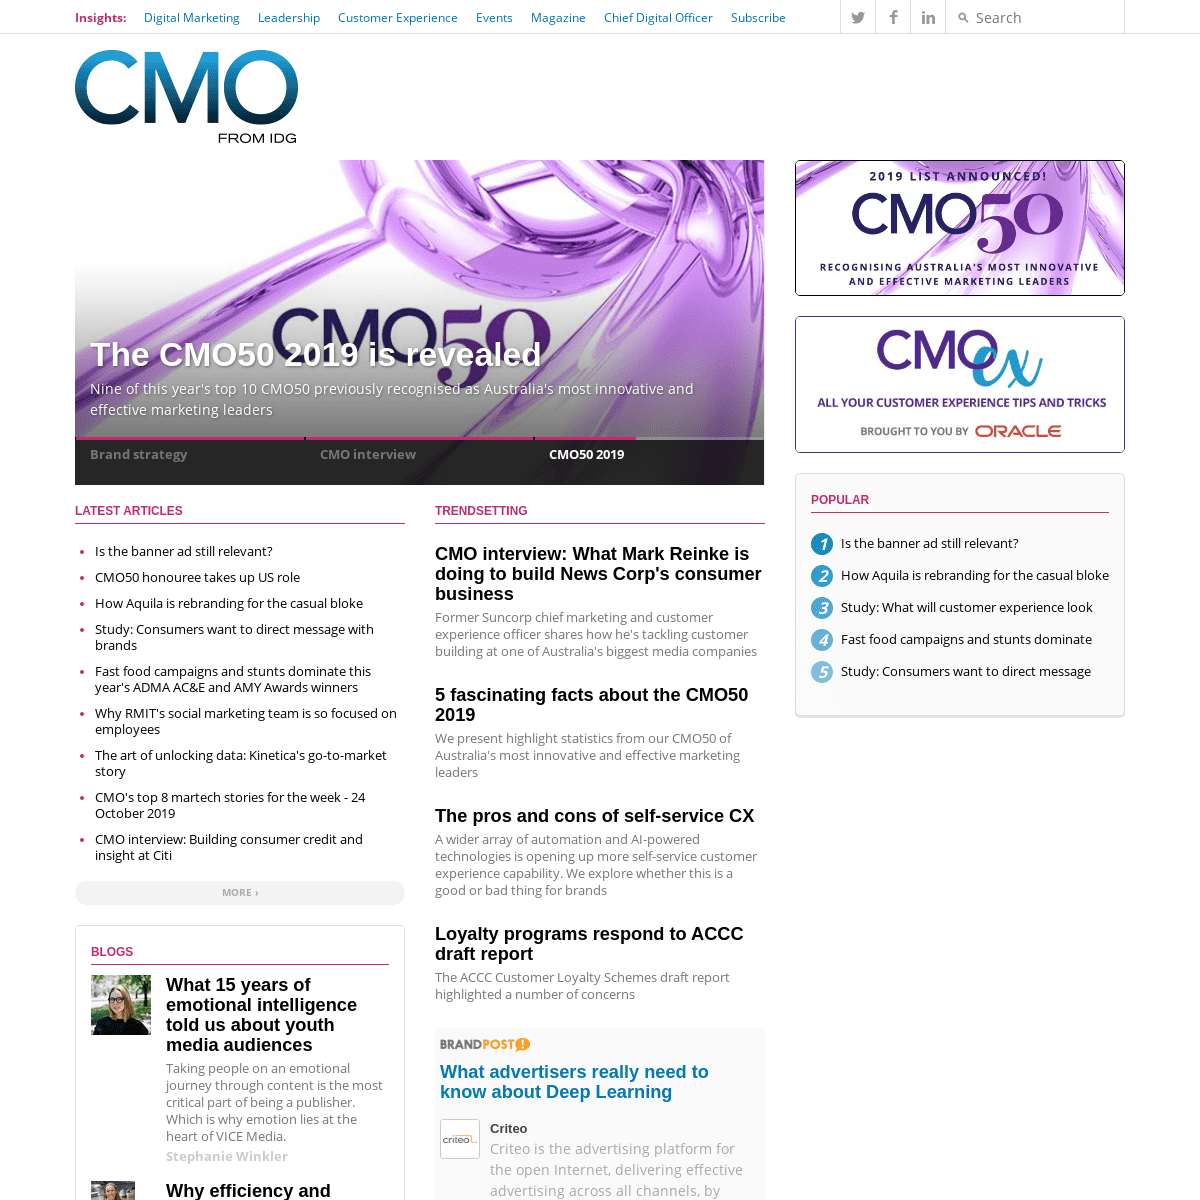 A complete backup of cmo.com.au